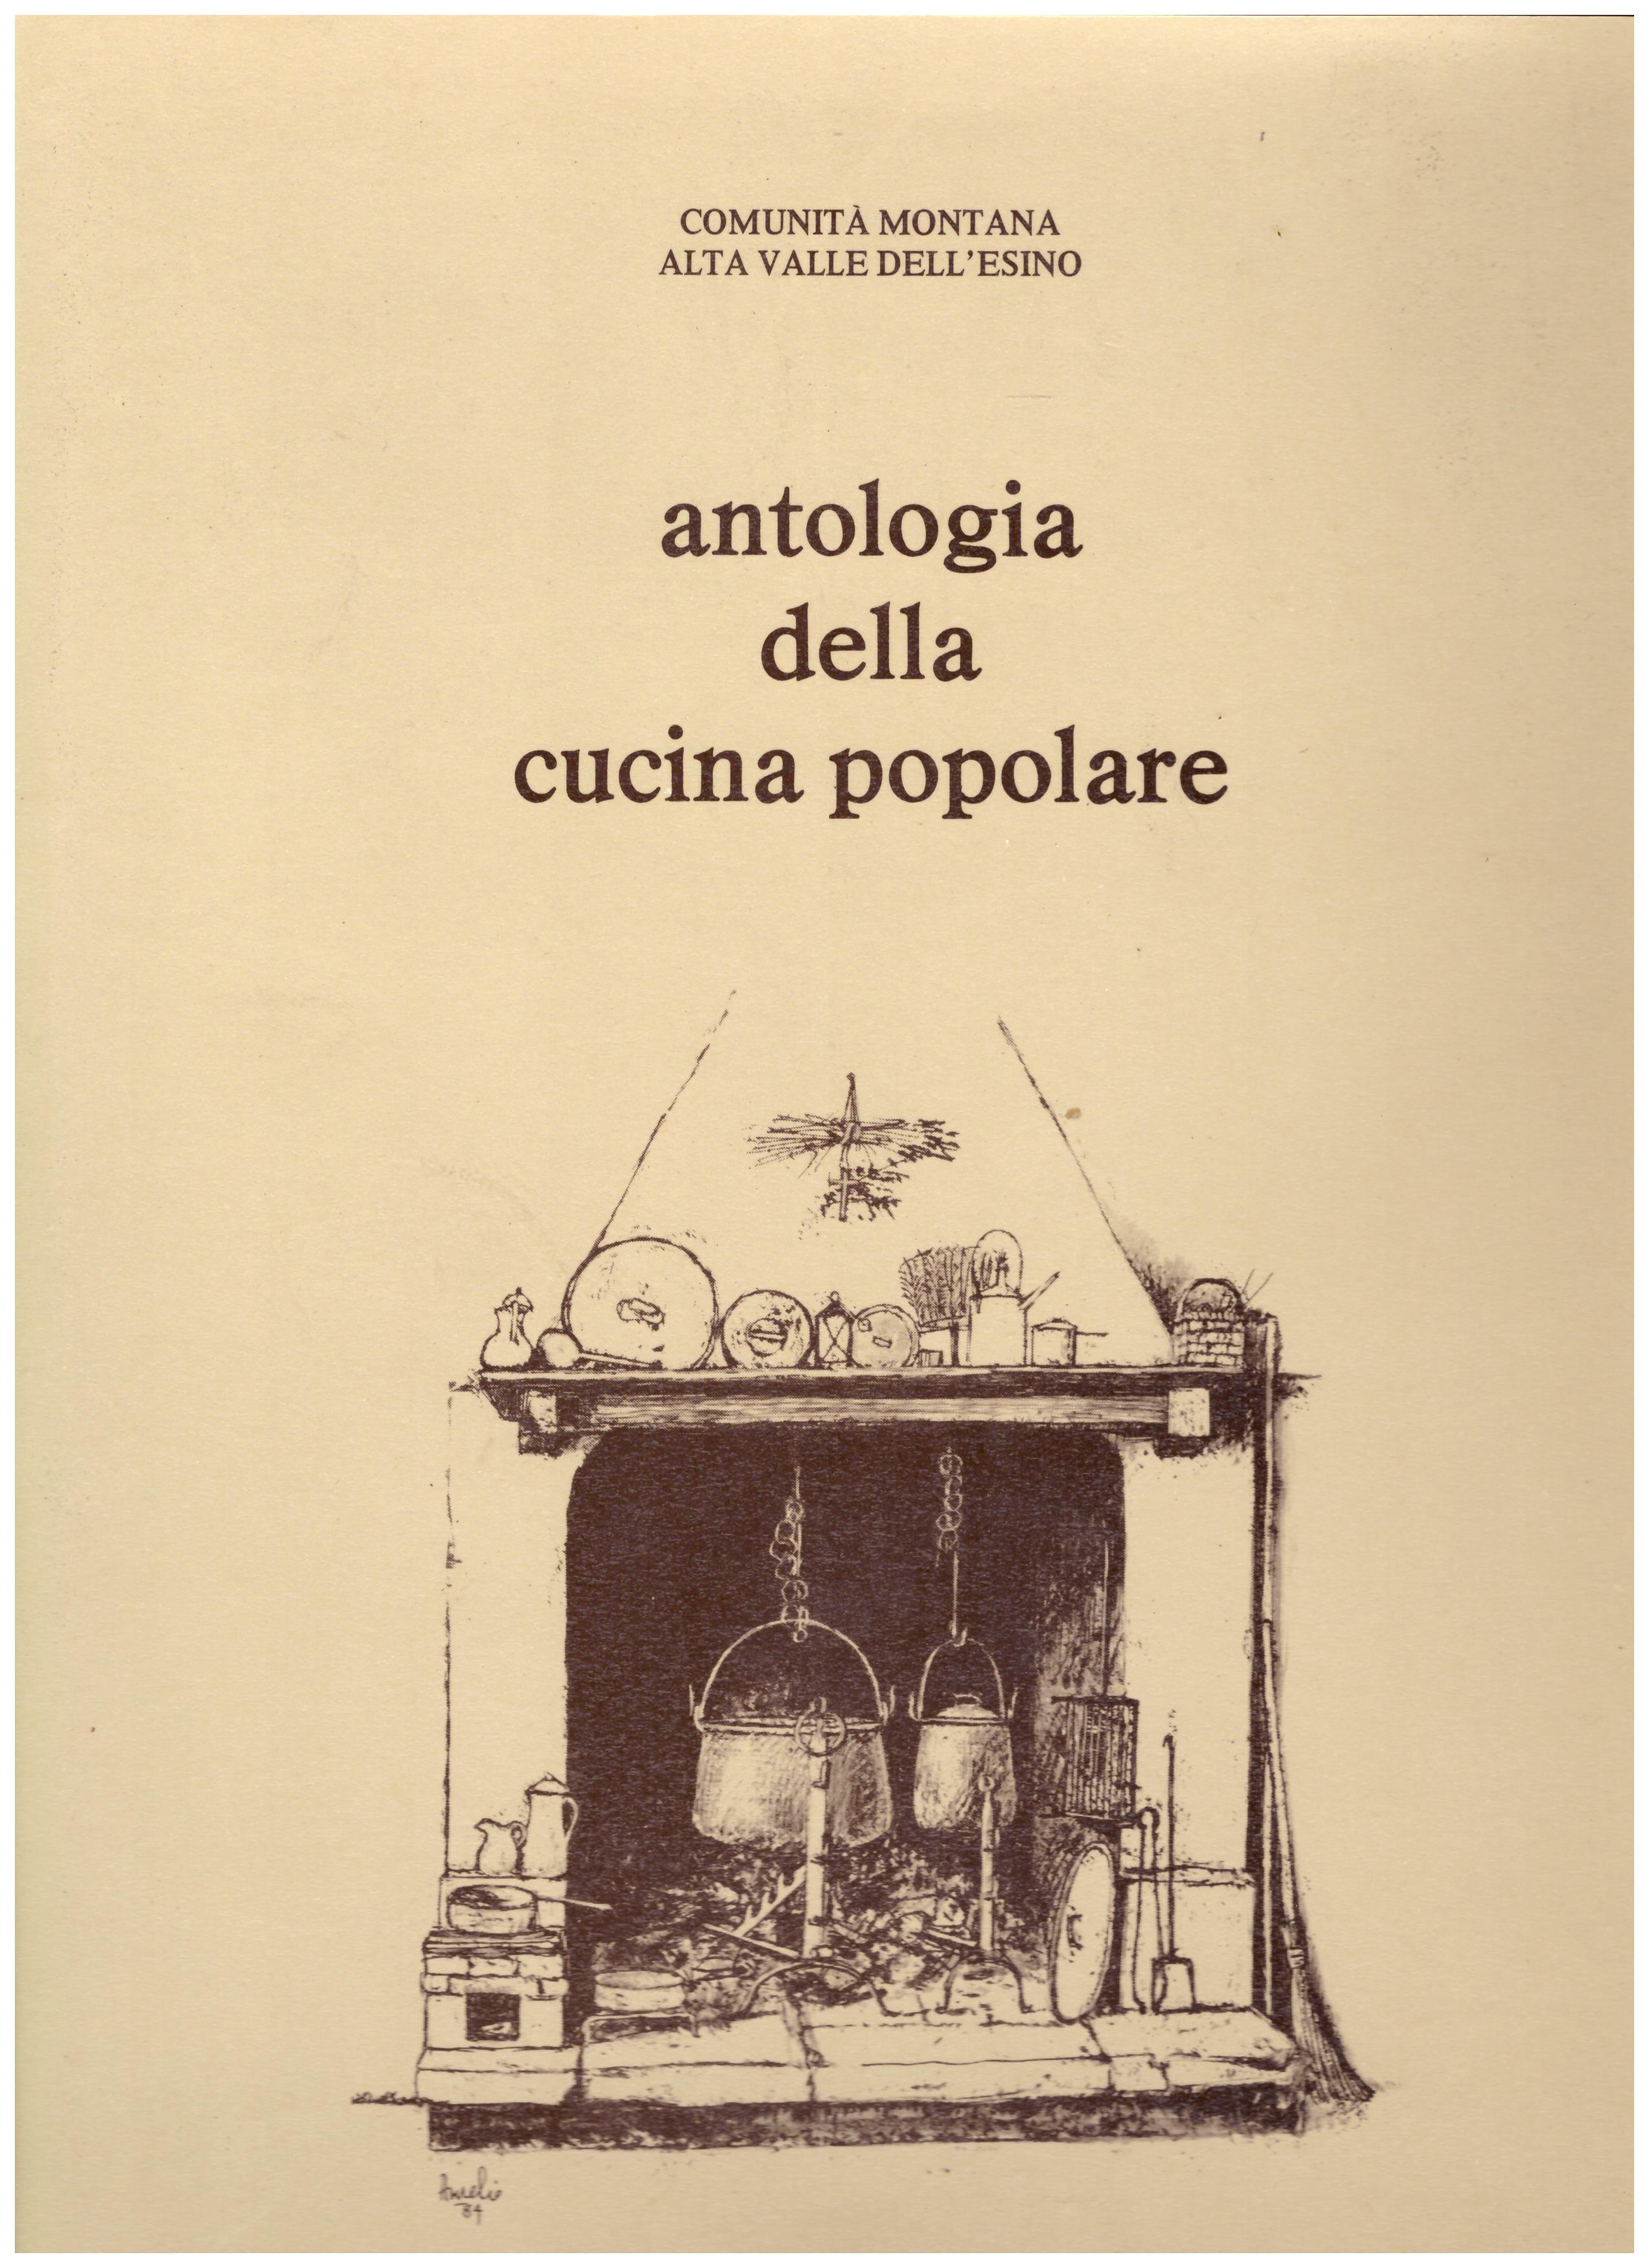 Titolo: Antologia della cucina popolare     Autore: AA.VV.    Editore: Comunità montana alta valle dell'Esino